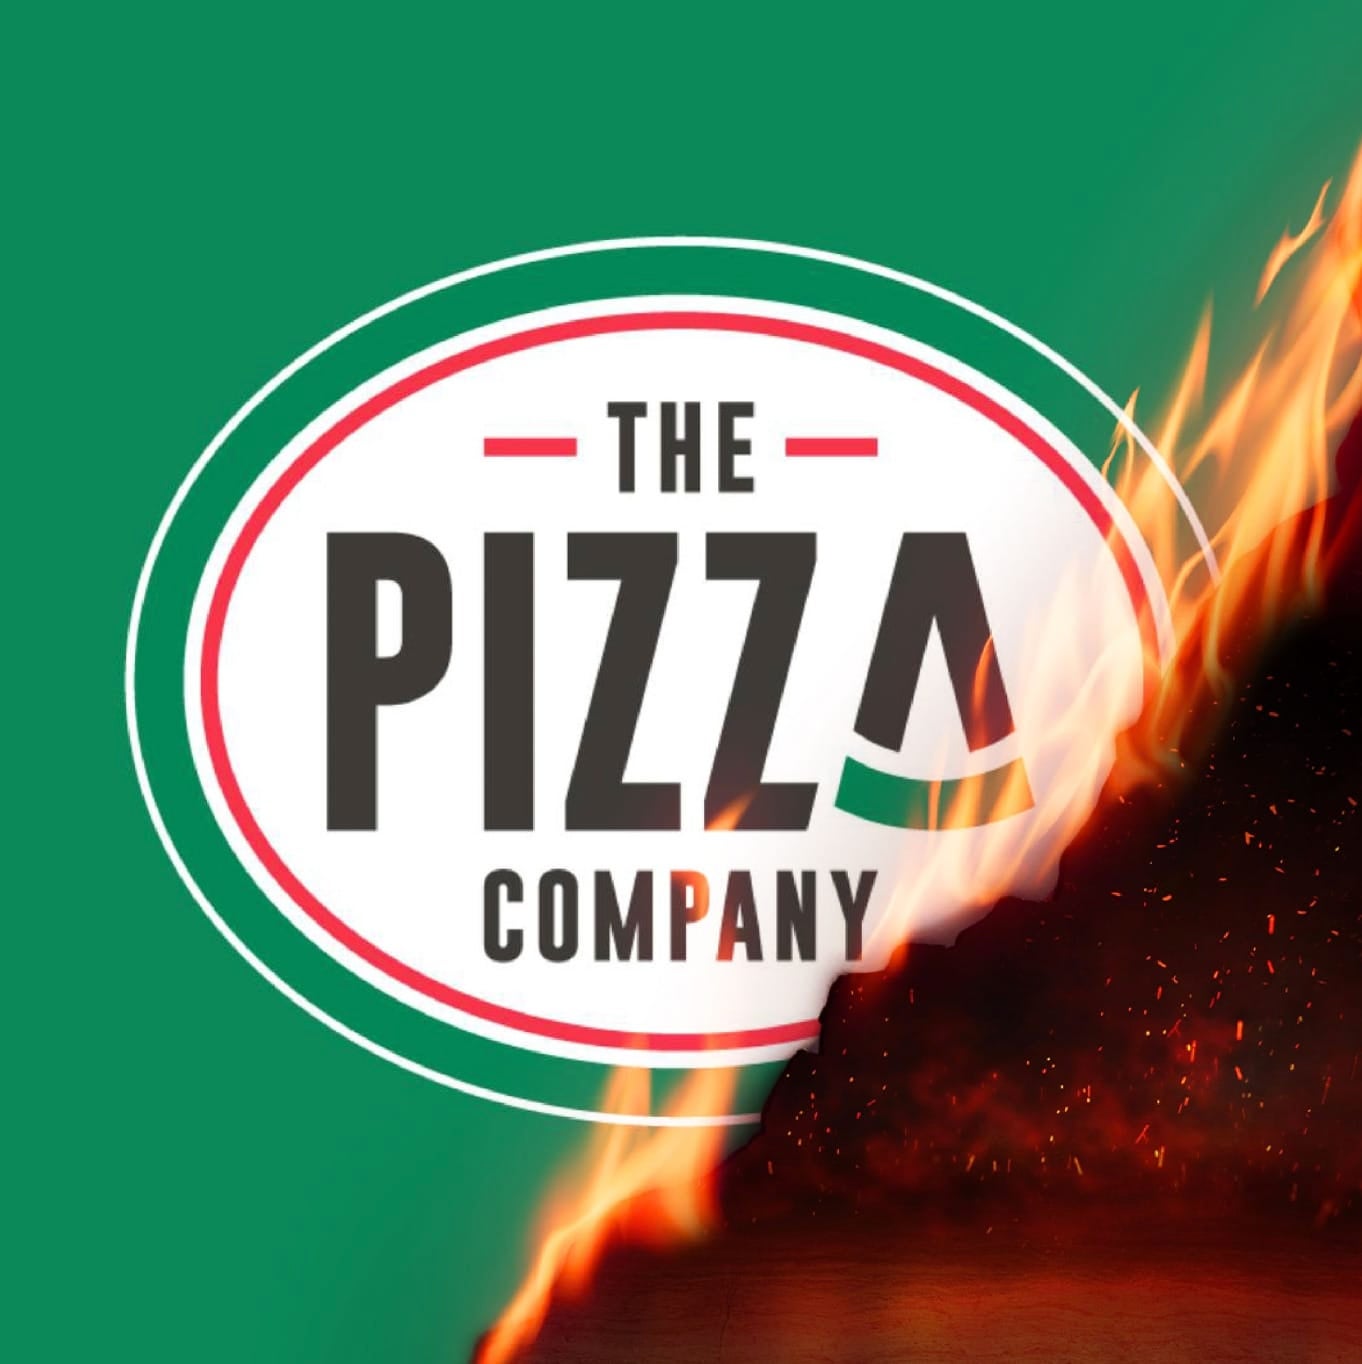 พิซซ่าหม่าล่า The Pizza Company 1112